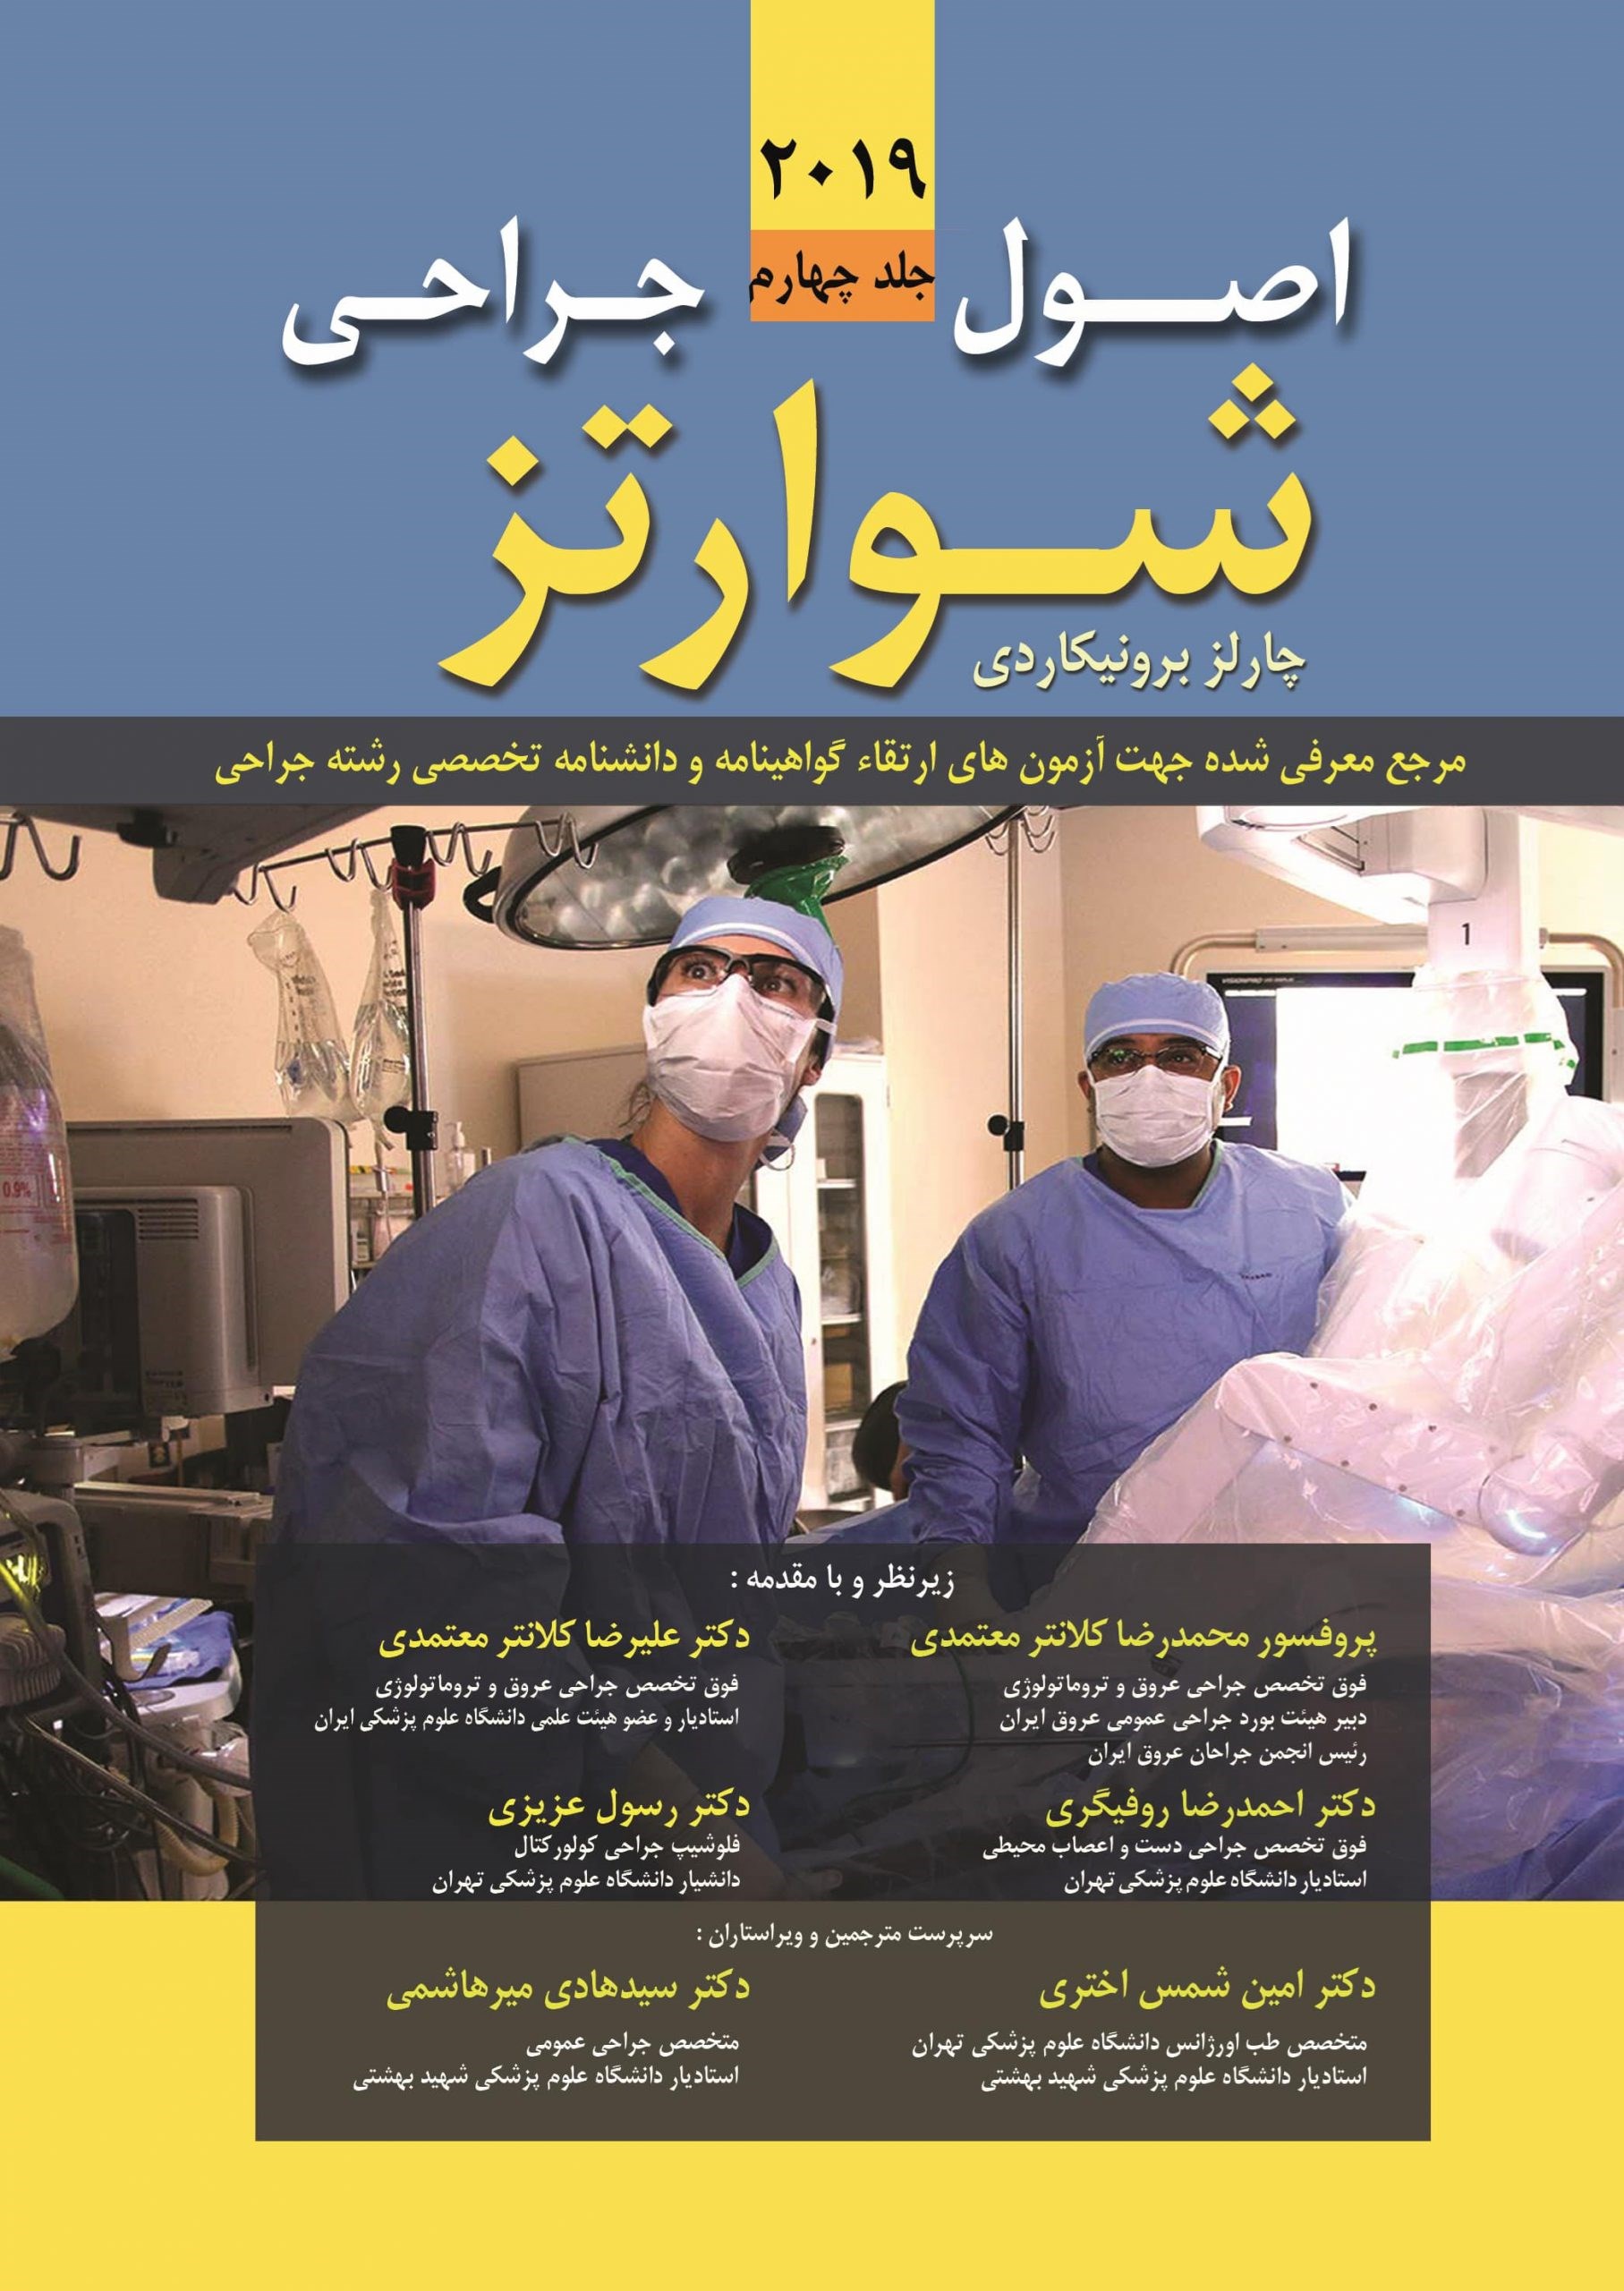 اصول جراحی شوارتز 2019 (جلد چهارم)